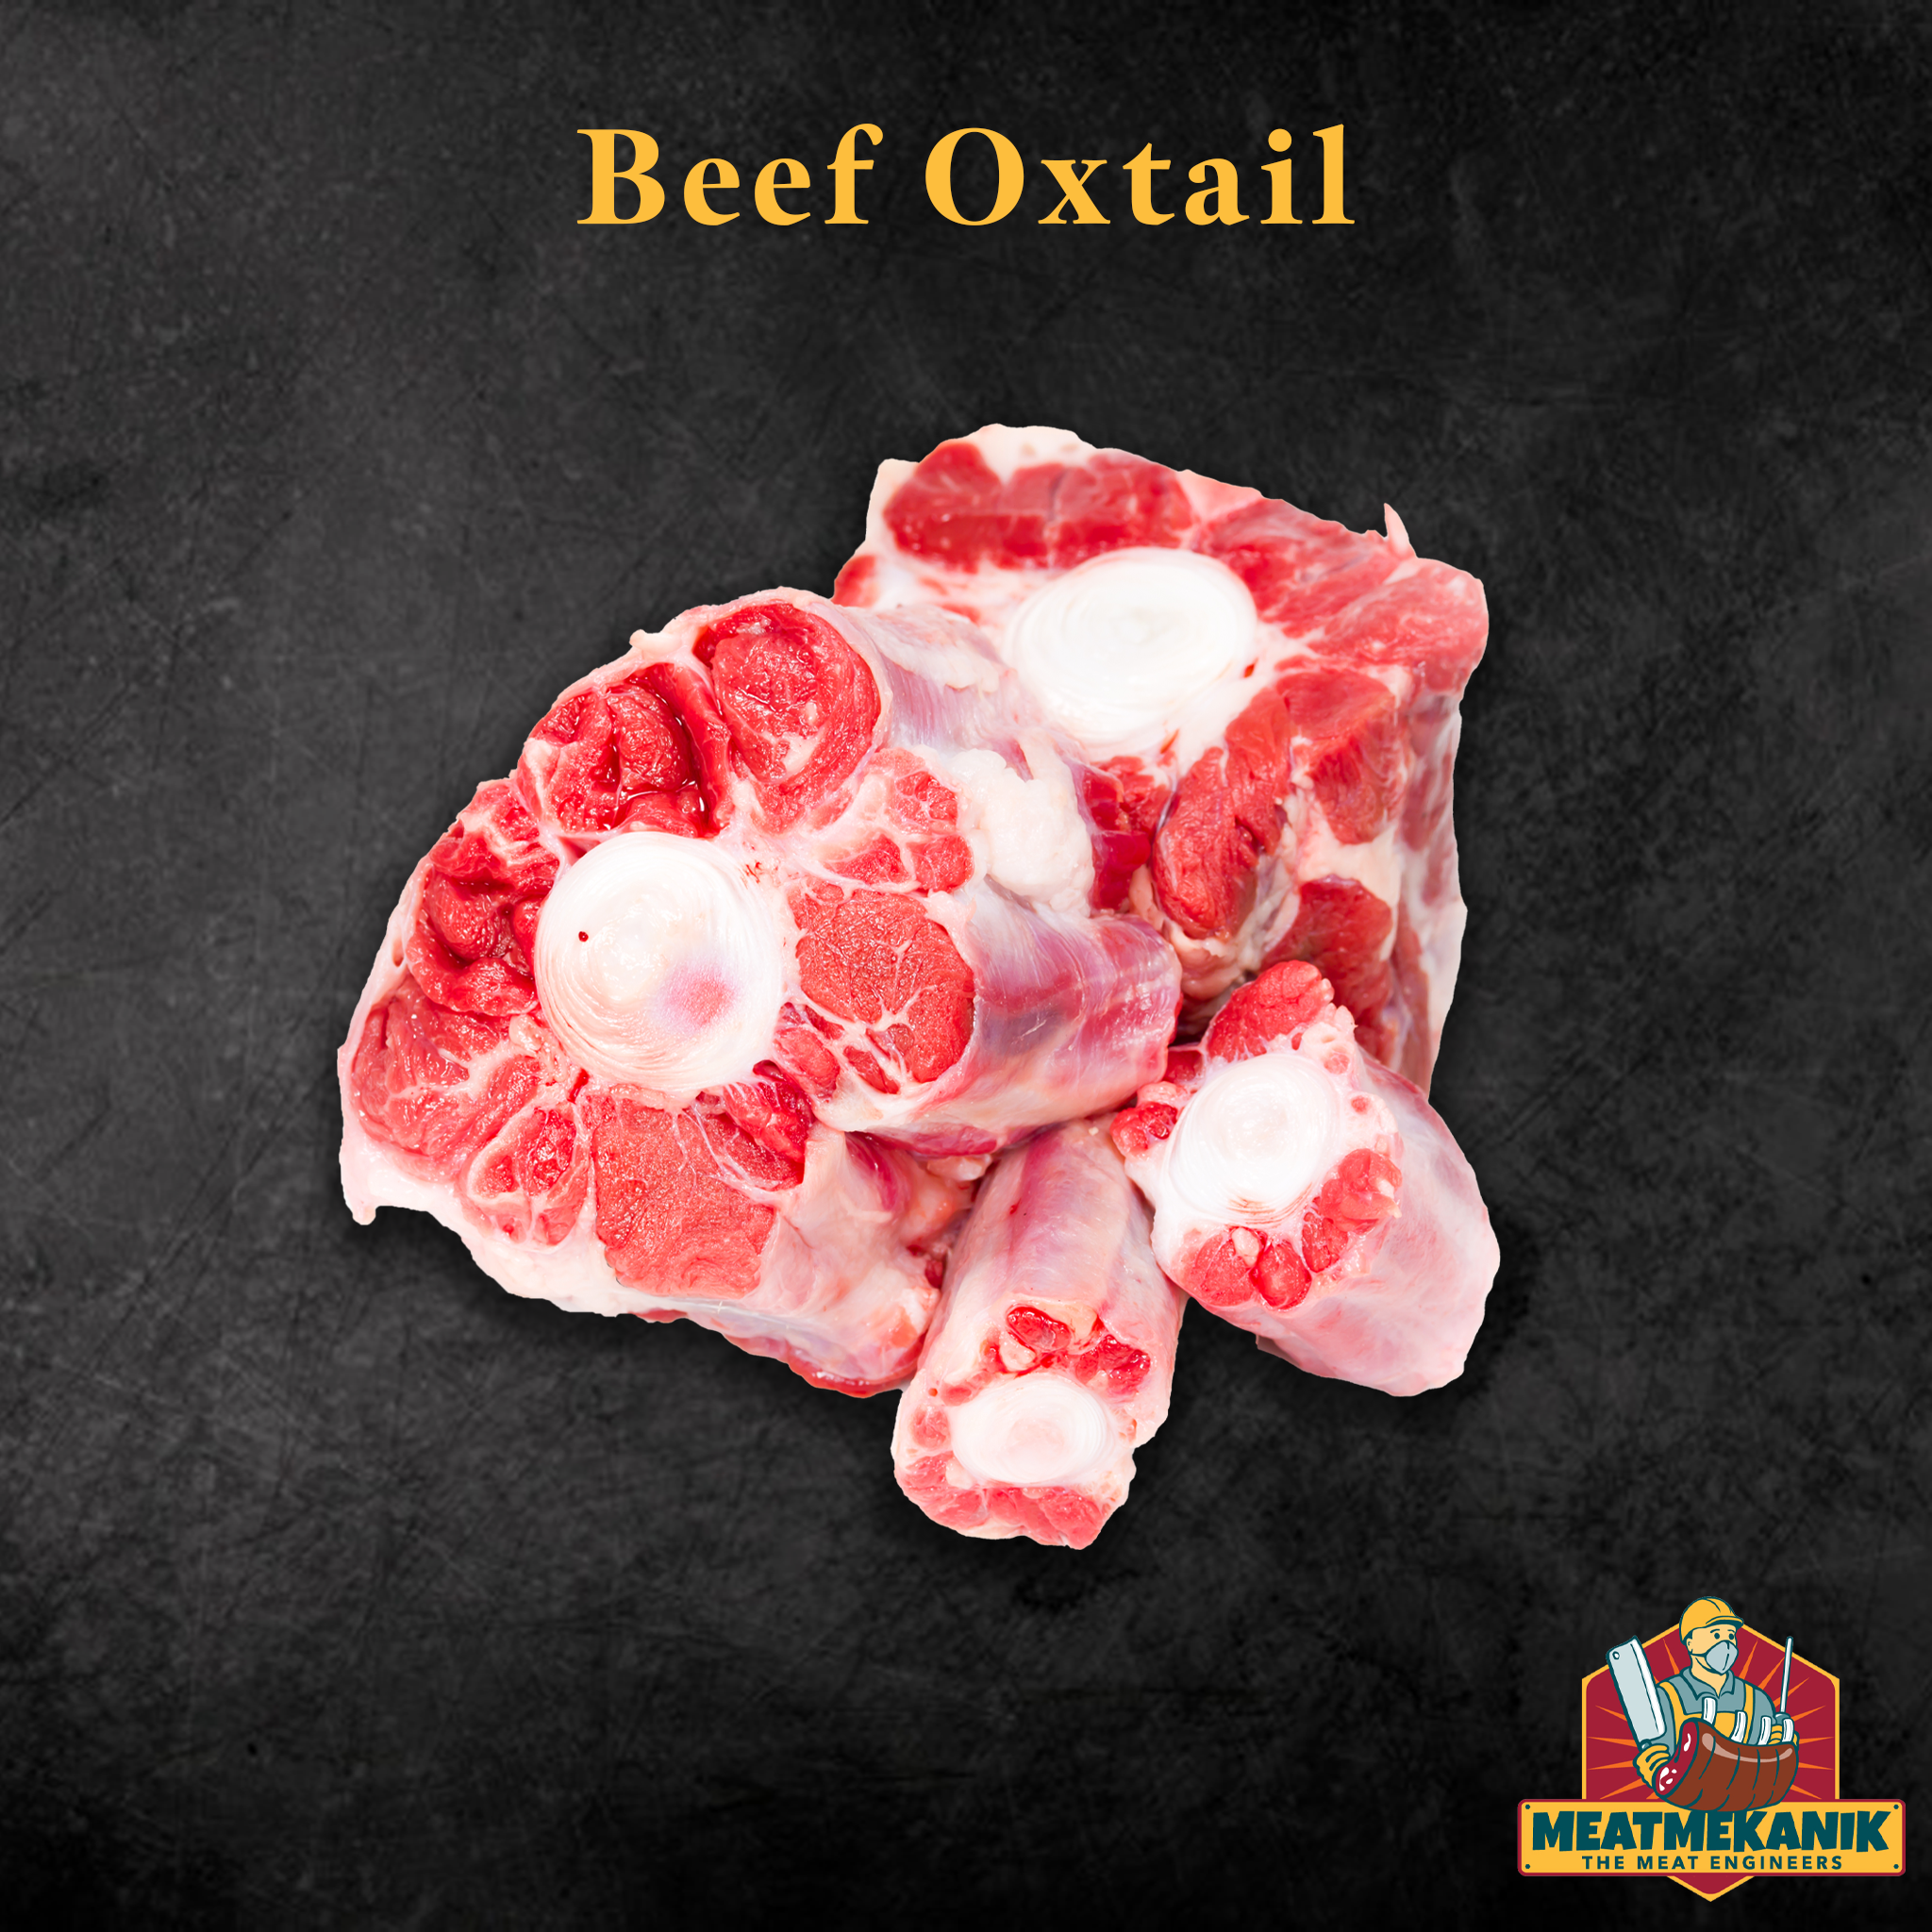 Beef Oxtail - Meat Mekanik